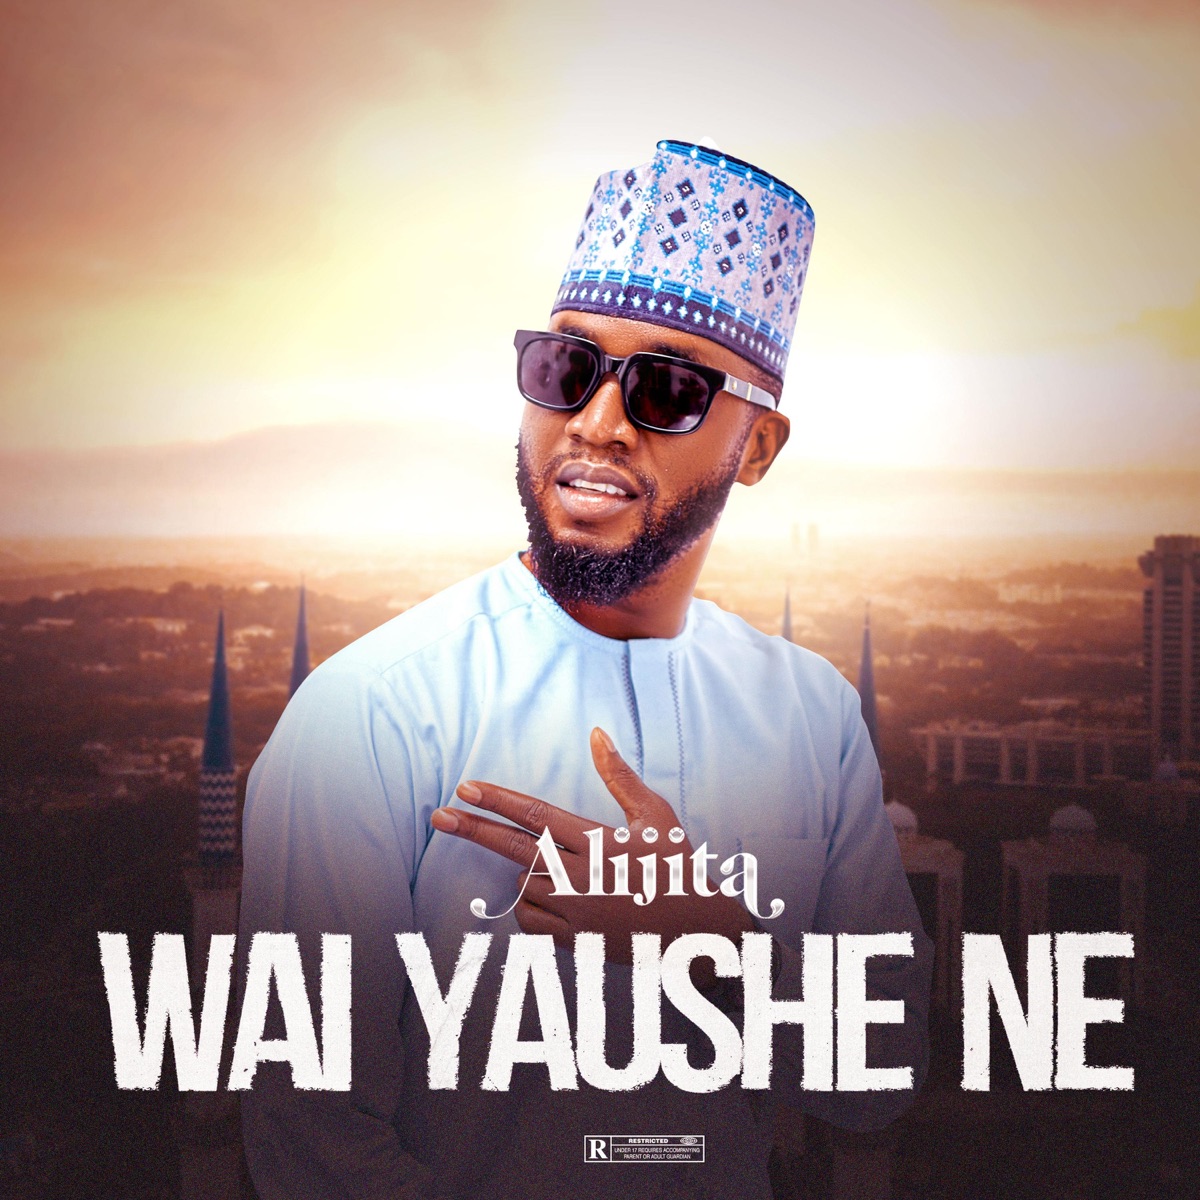 Ali Jita - Wai Yaushe Ne Mp3 Download